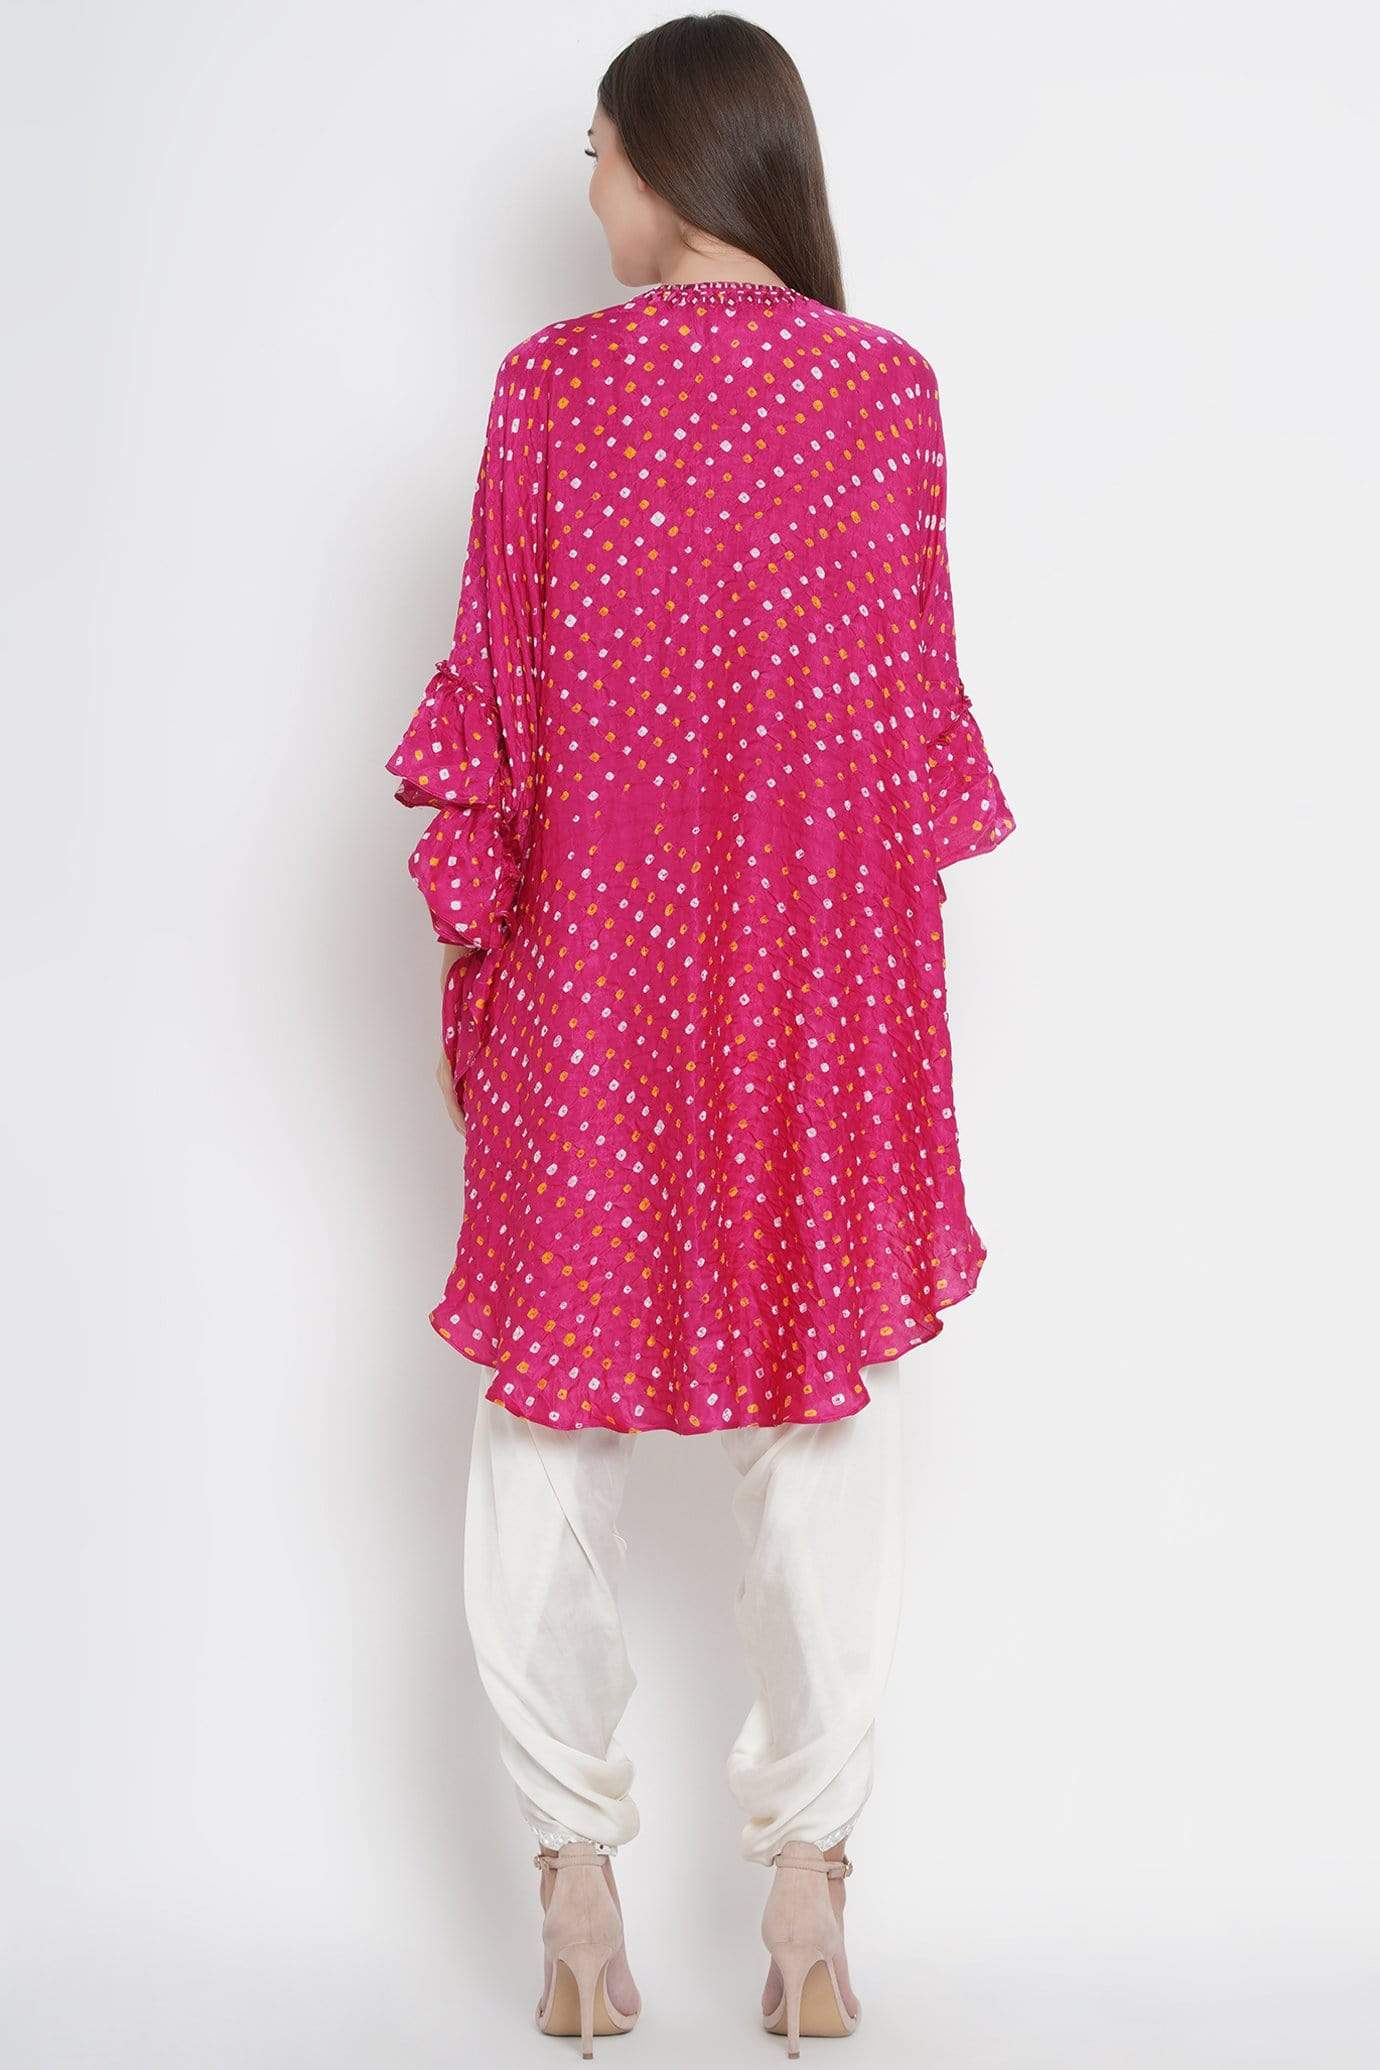 Pink Silk Bandhani Tunic